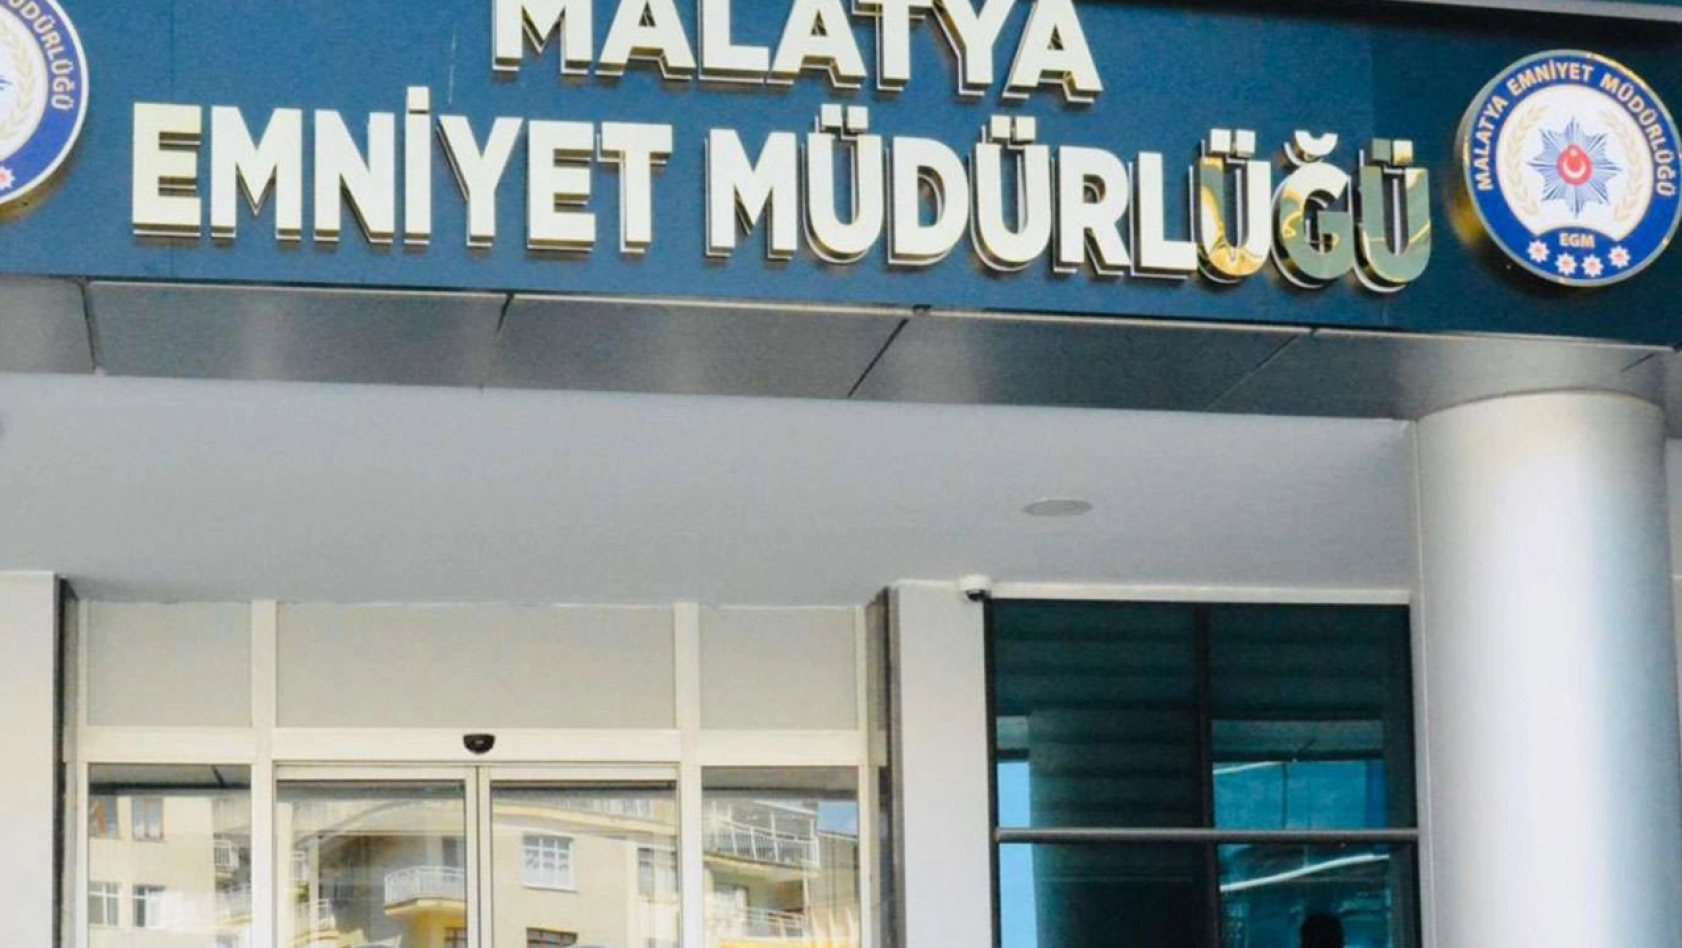 Malatya'da kesinleşmiş hapis cezaları bulunan 3 kişi yakalandı